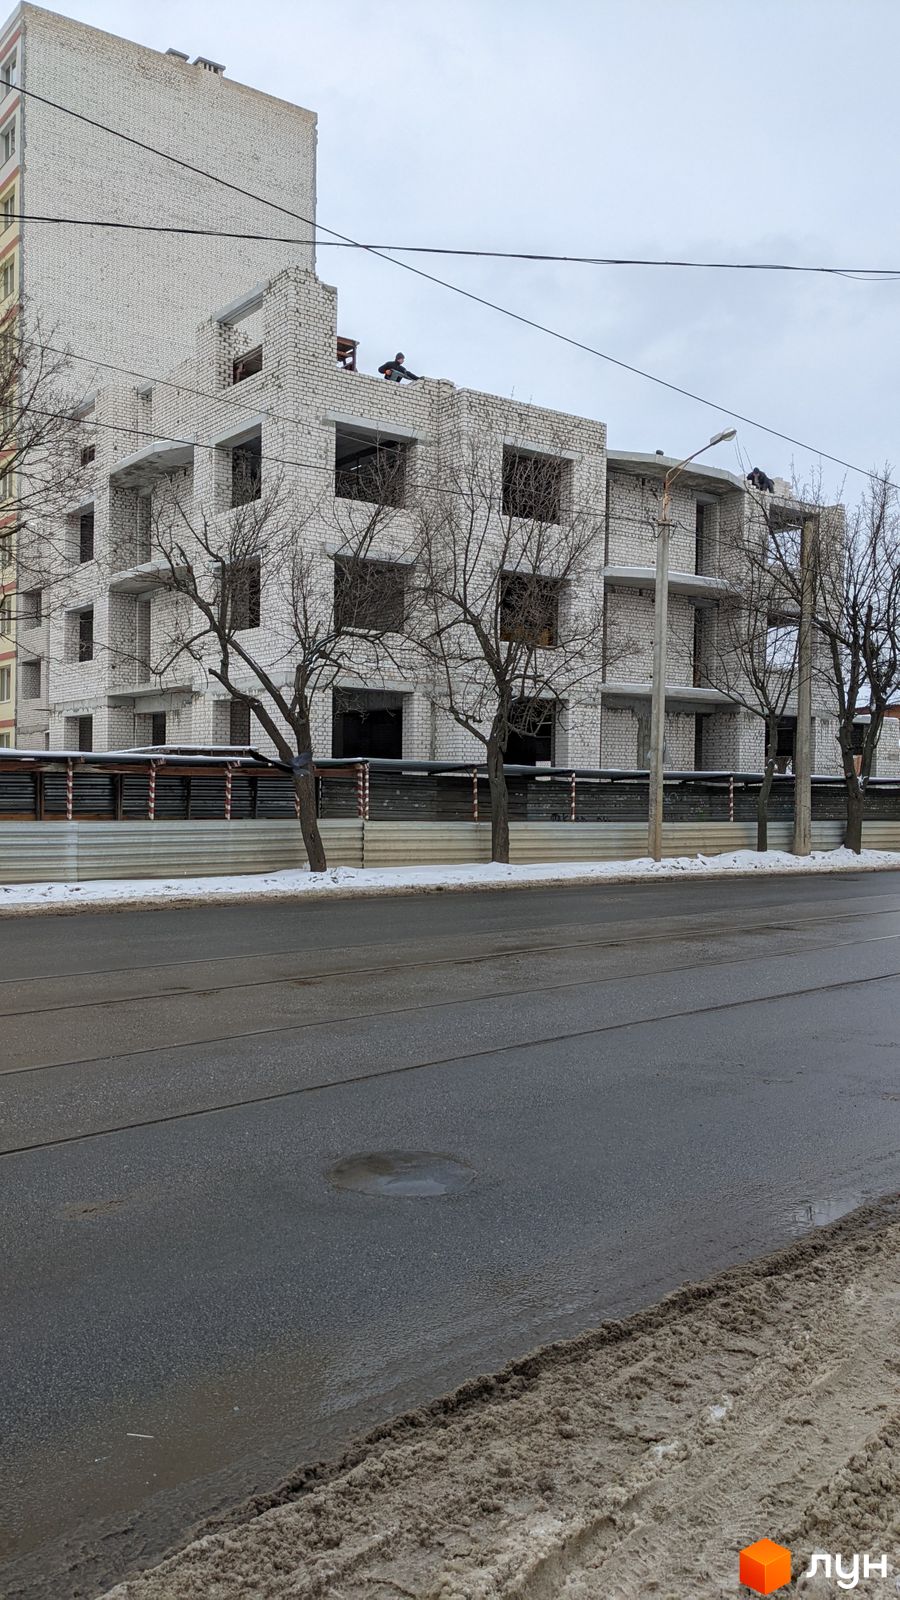 Моніторинг будівництва ЖБК Новий дім Котлова - Ракурс 8, січень 2022